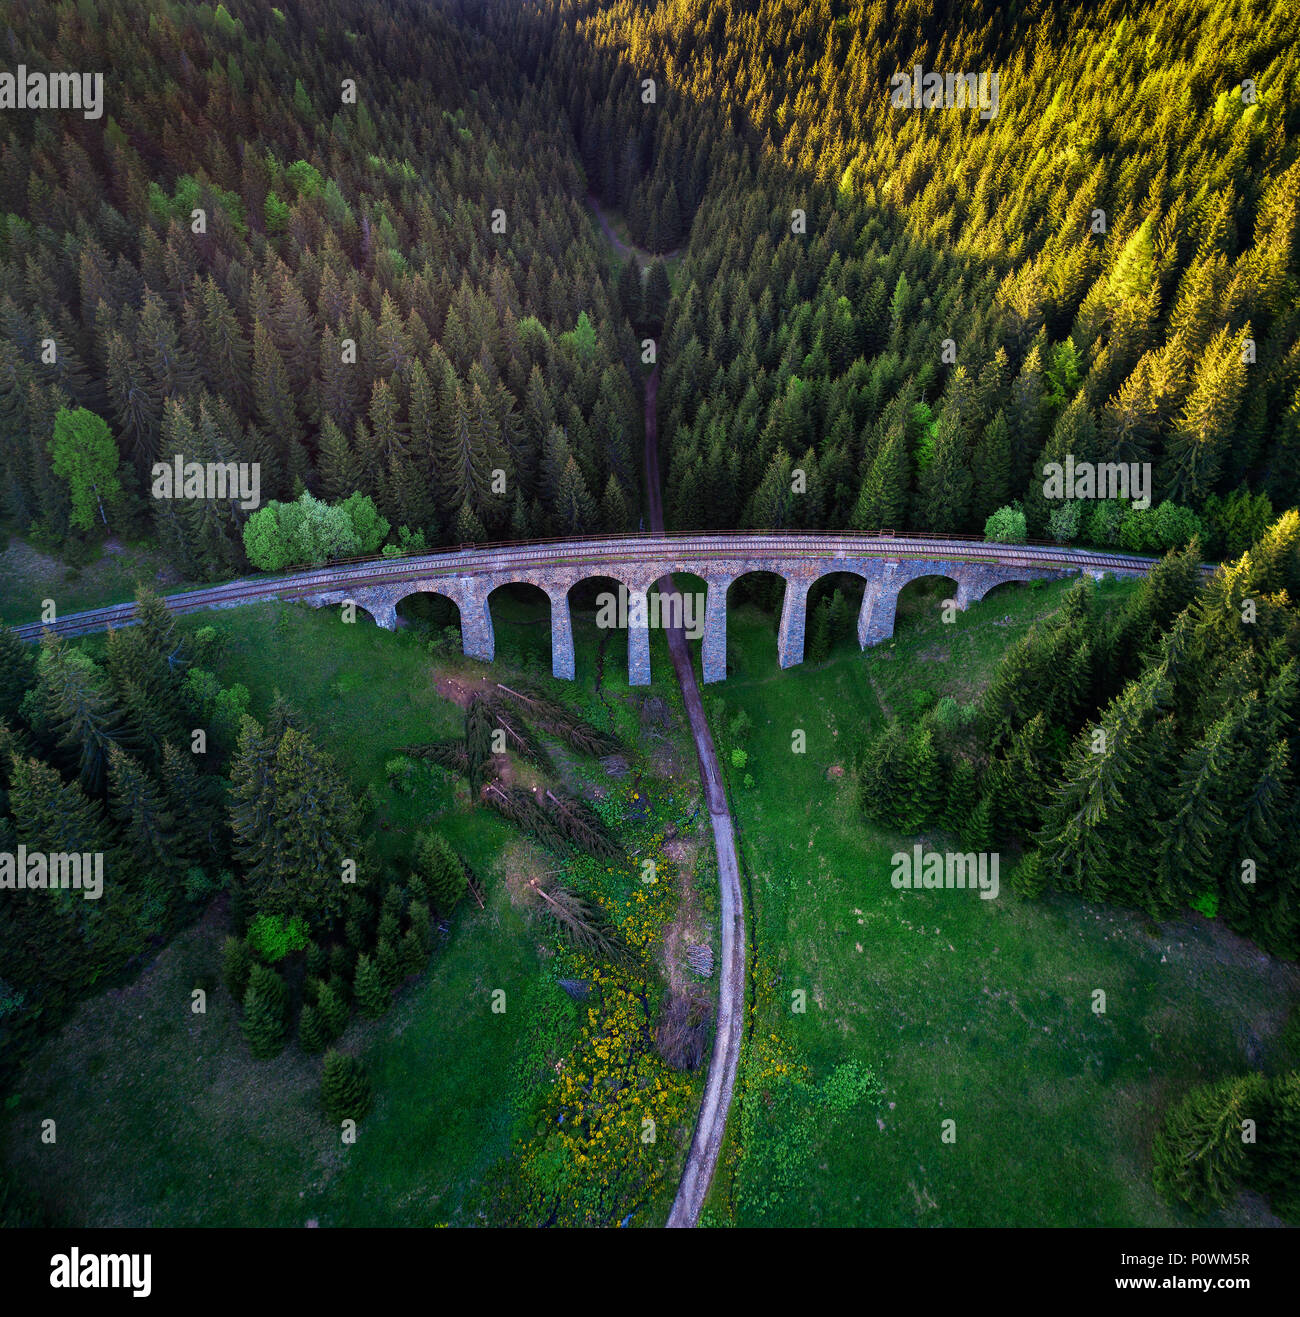 Historic railway viaduct near Telgart in Slovakia Stock Photo